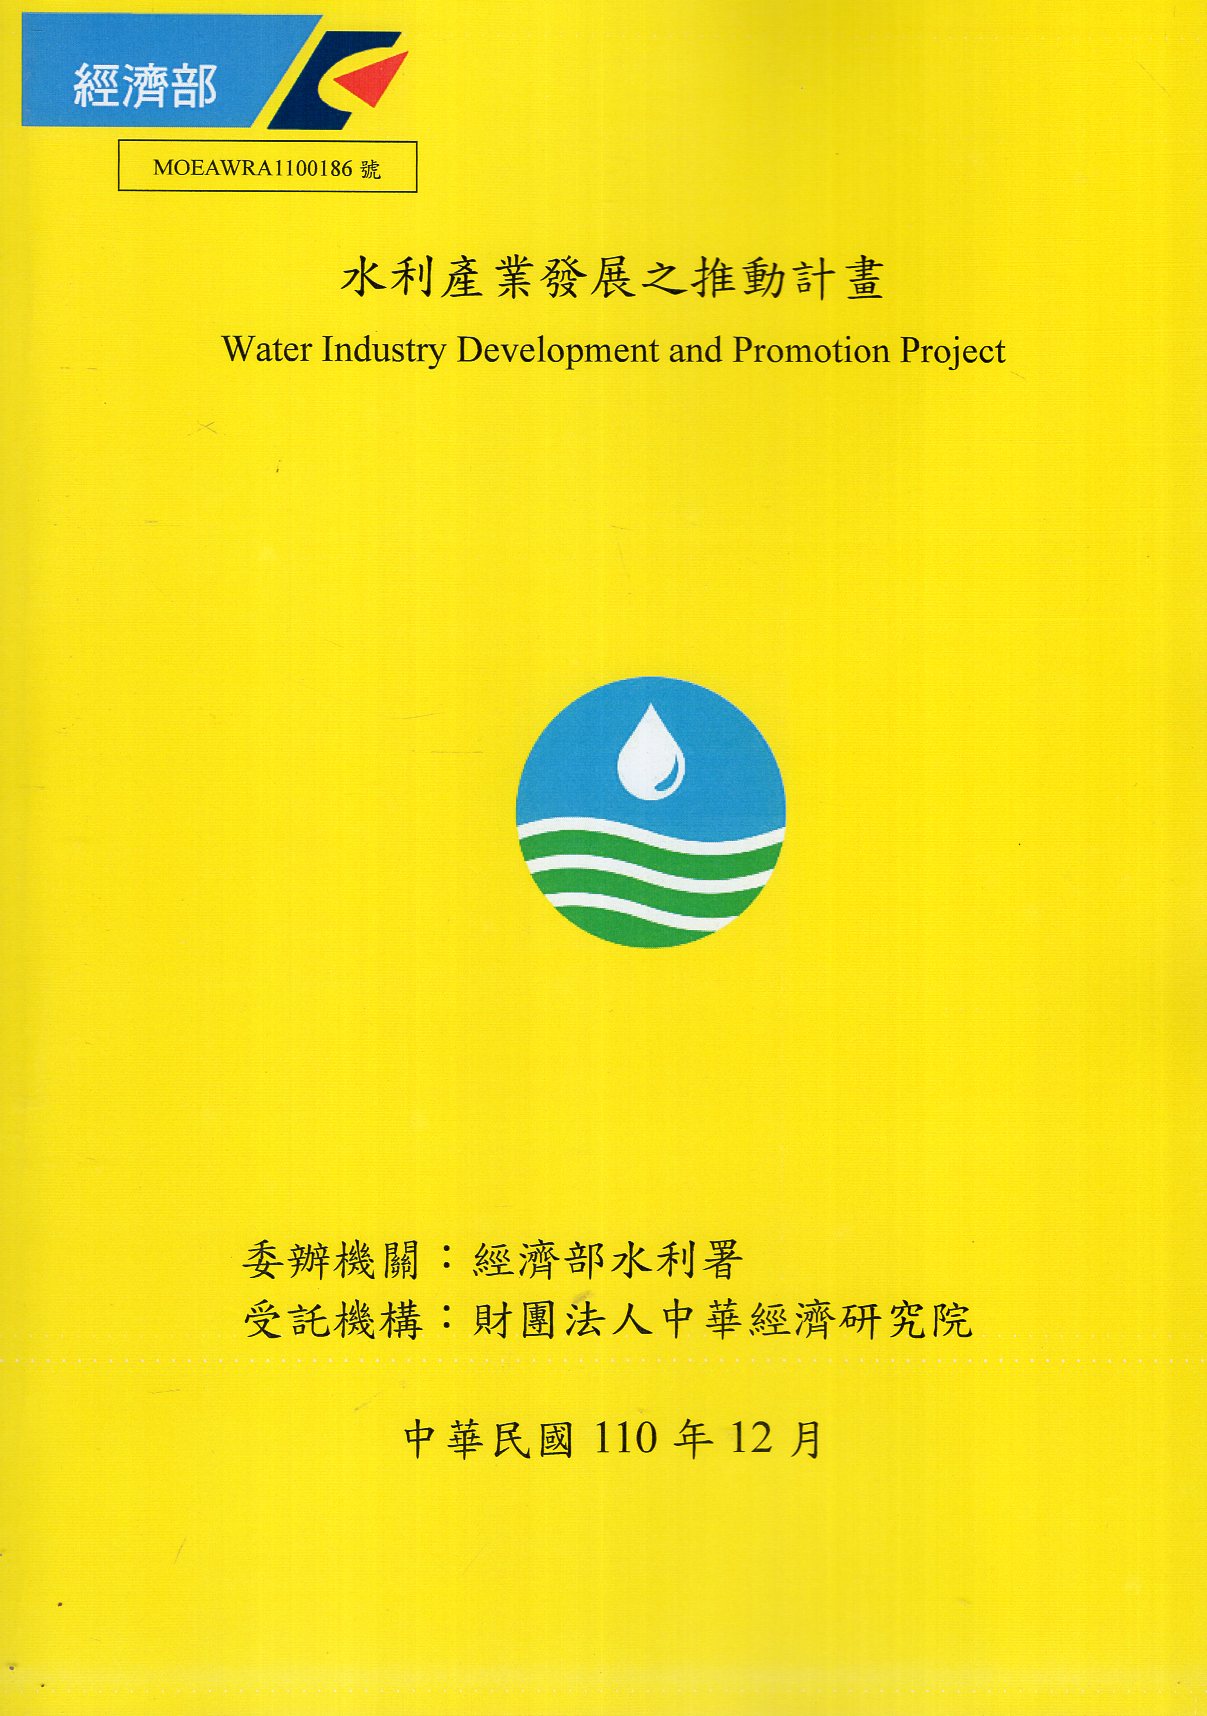 水利產業發展之推動計畫 